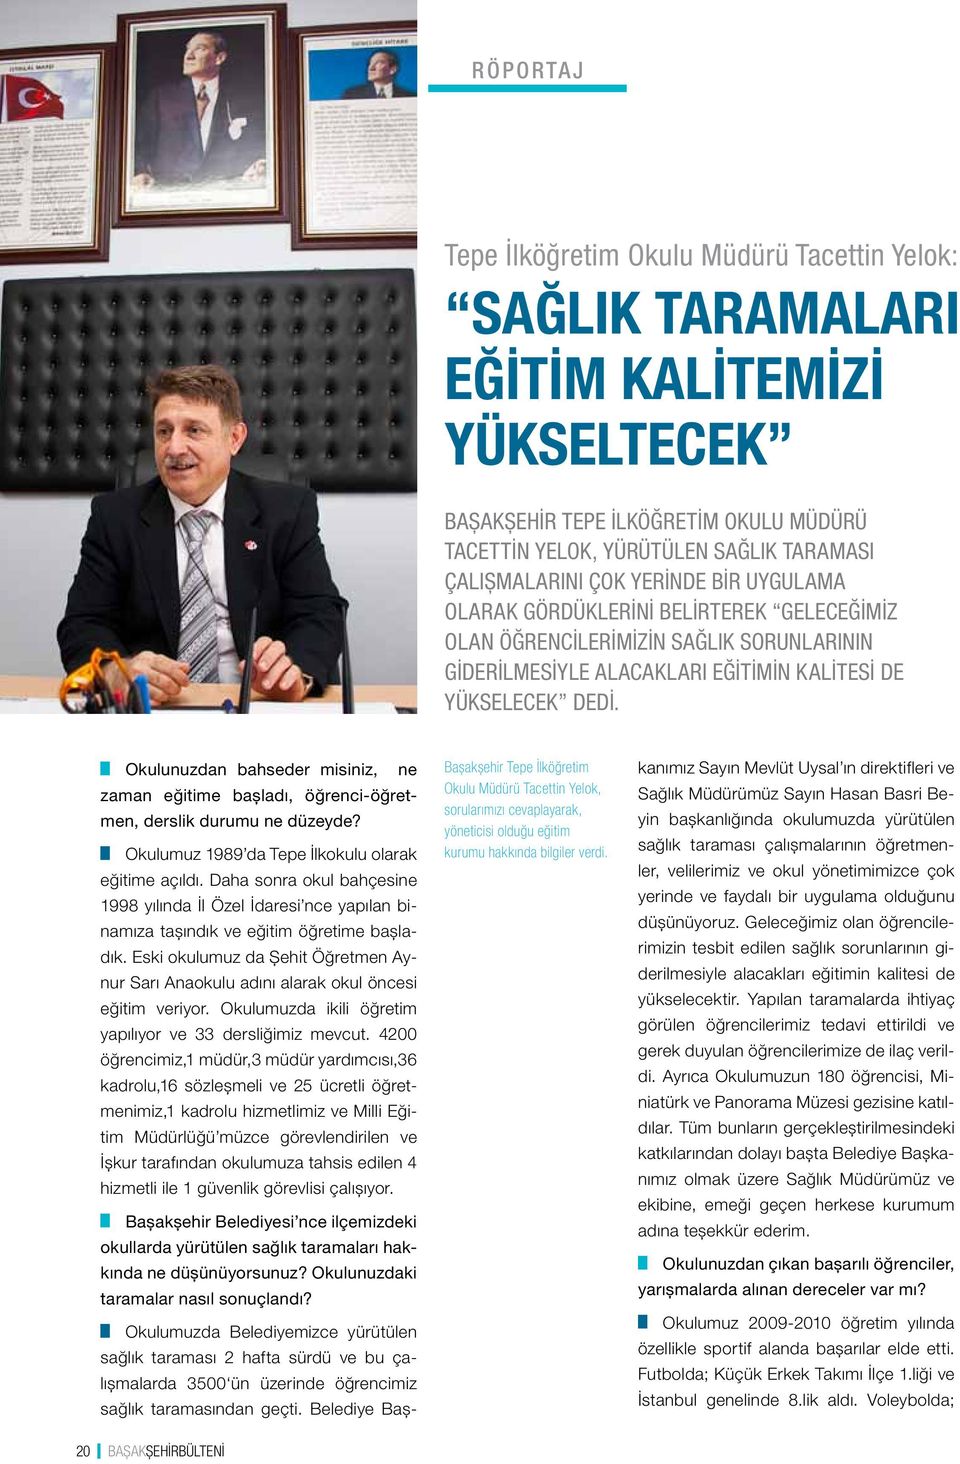 Başakşehir Tepe İlköğretim Okulu Müdürü Tacettin Yelok, sorularımızı cevaplayarak, yöneticisi olduğu eğitim kurumu hakkında bilgiler verdi.